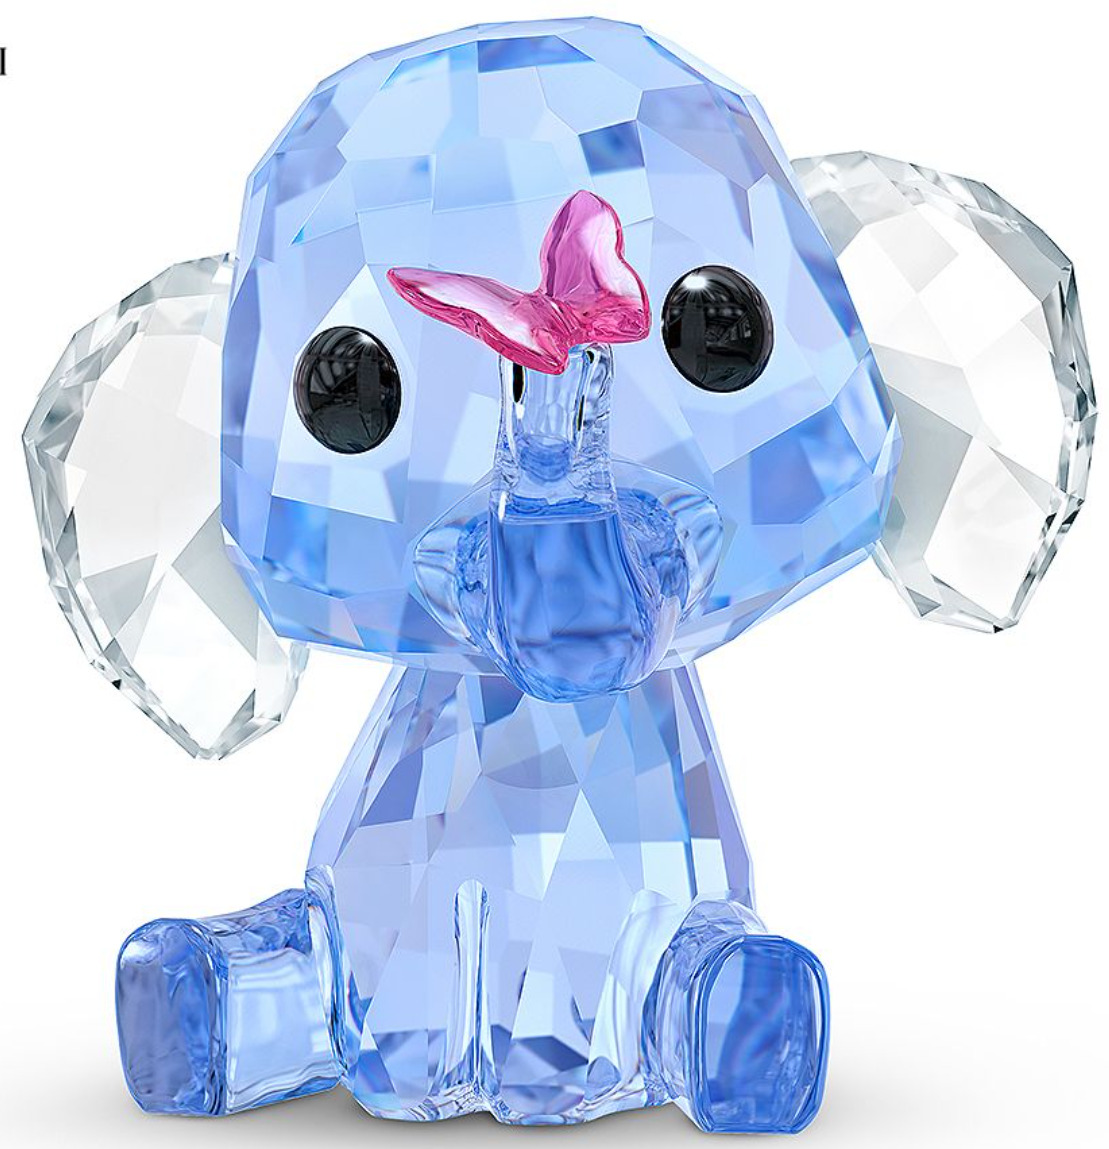 Swarovski Baby Animals Dreamy the Elephant #5506808 Authentic New in Box